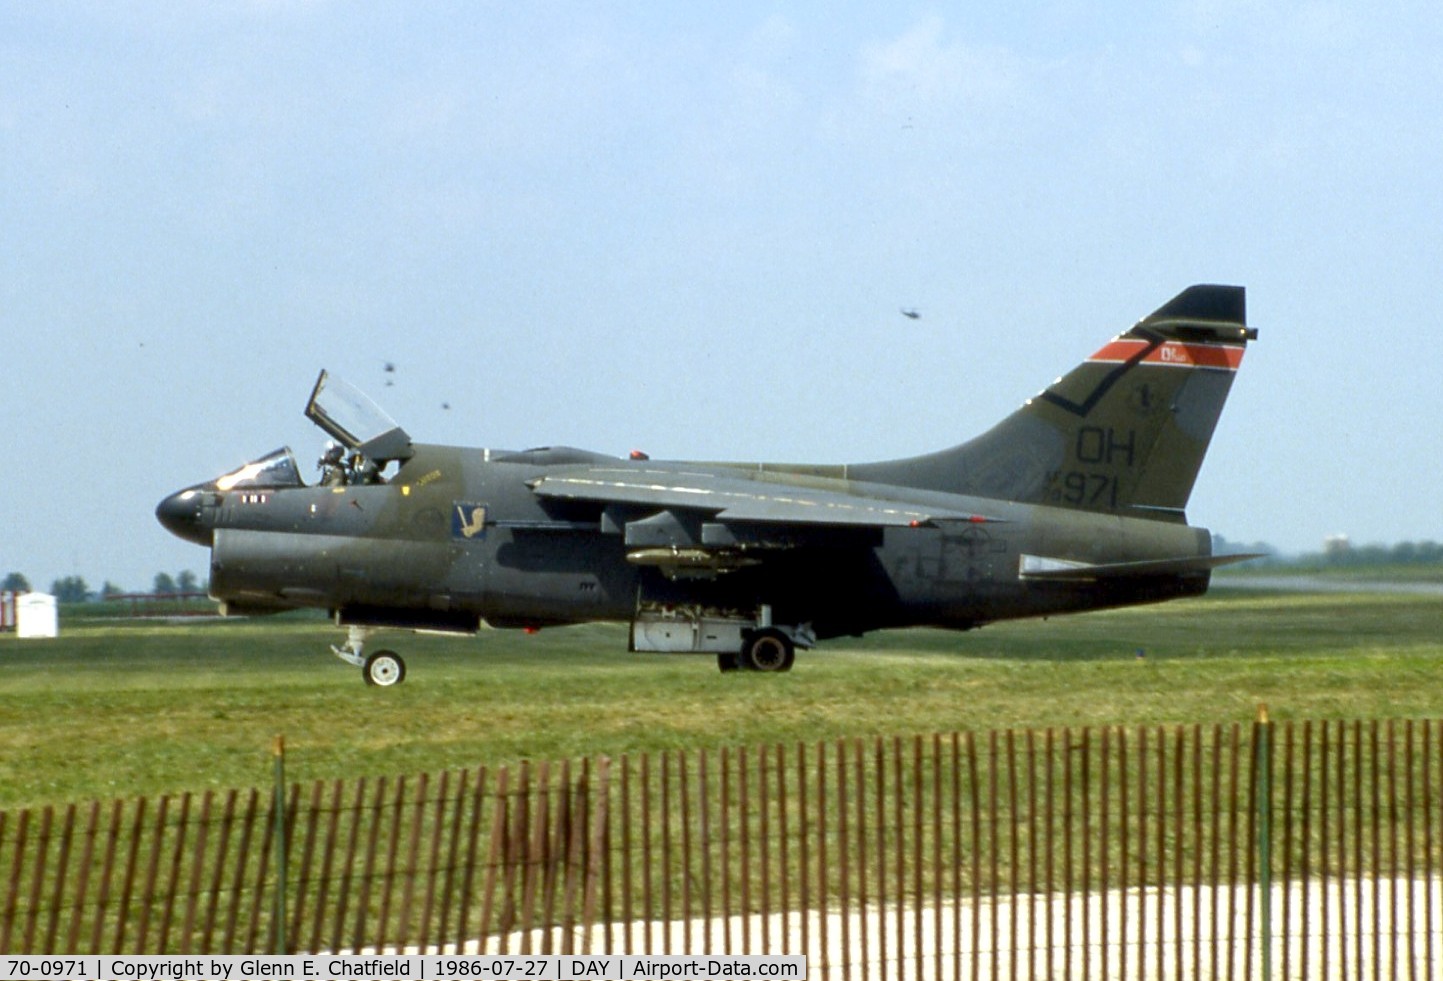 70-0971, 1970 LTV A-7D Corsair II C/N D-117, At the Dayton International Air Show, based at SGH